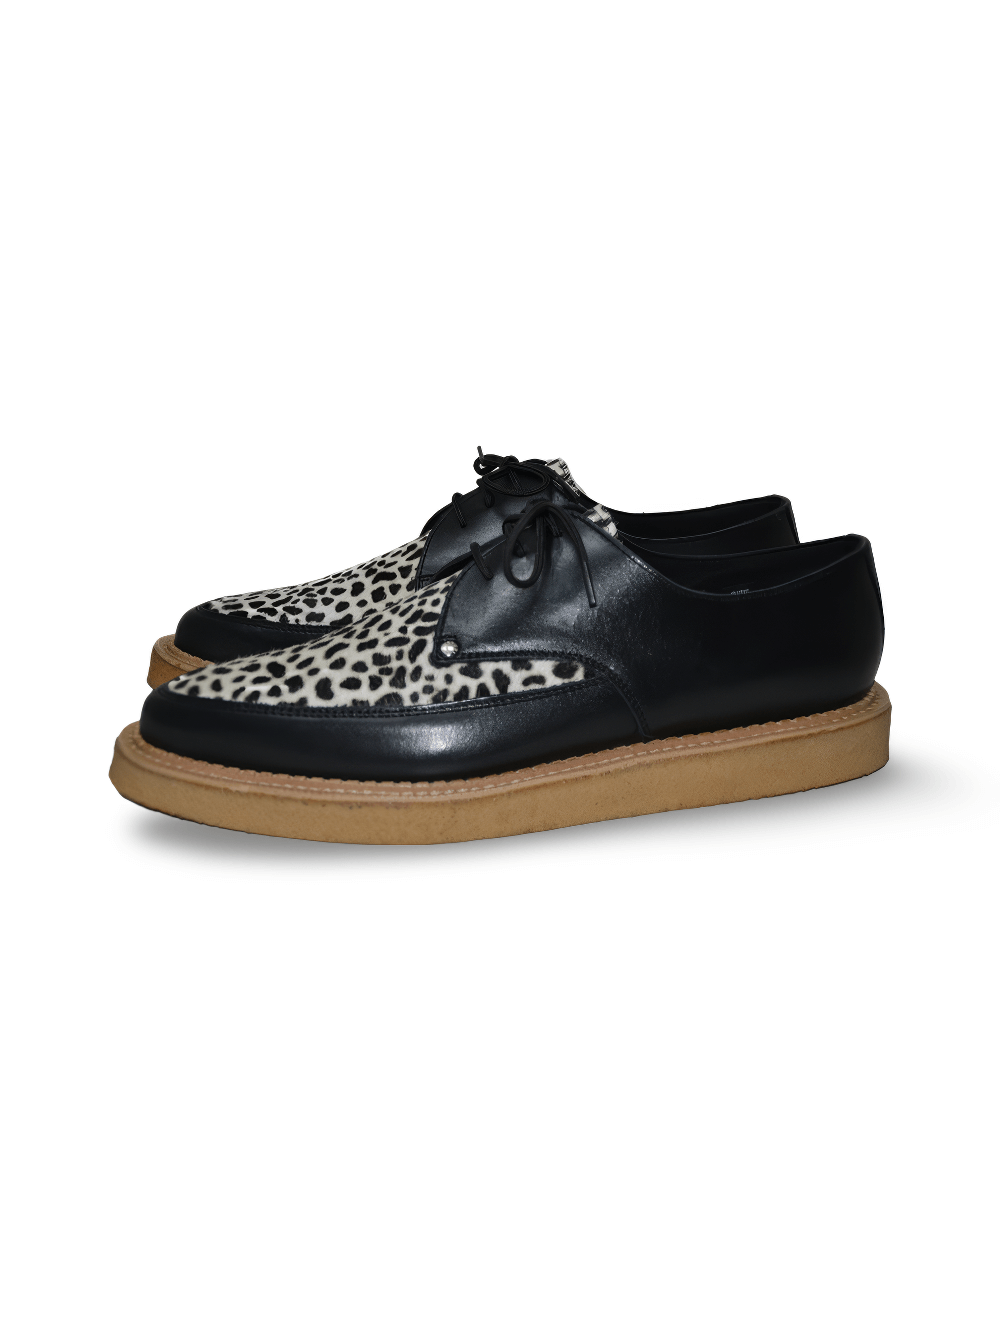 Zapatos Creepers de Punta de Leopardo Negro con Suela de Crepé